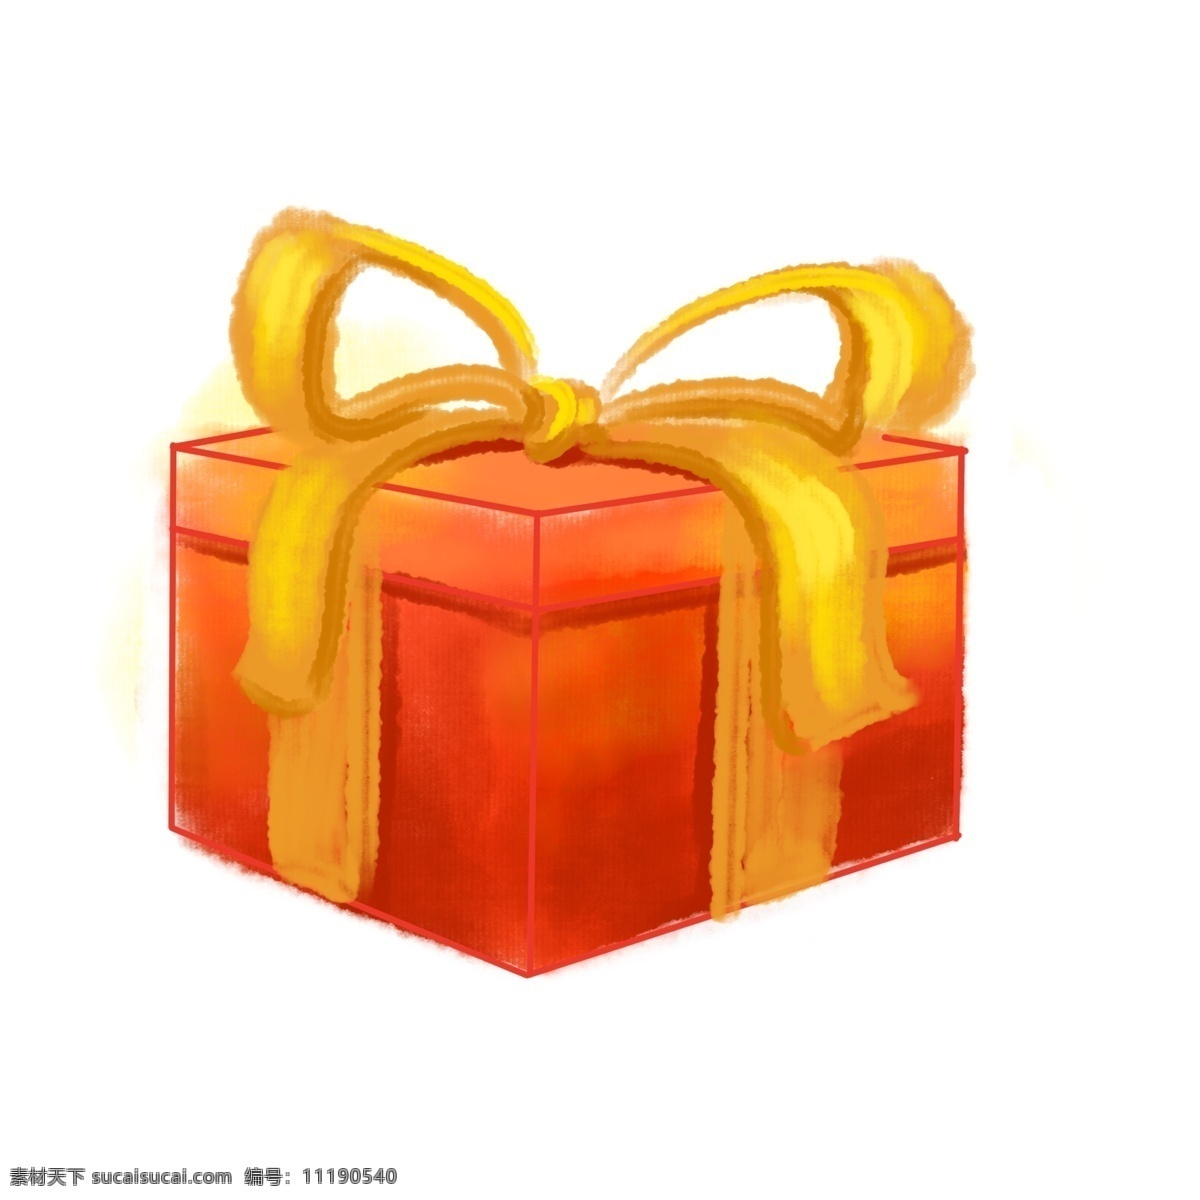 年货 蝴蝶结 礼盒 插画 年货礼盒 蝴蝶结装饰 礼盒装饰 礼盒插画 正方形礼盒 黄色的蝴蝶结 红色的礼盒